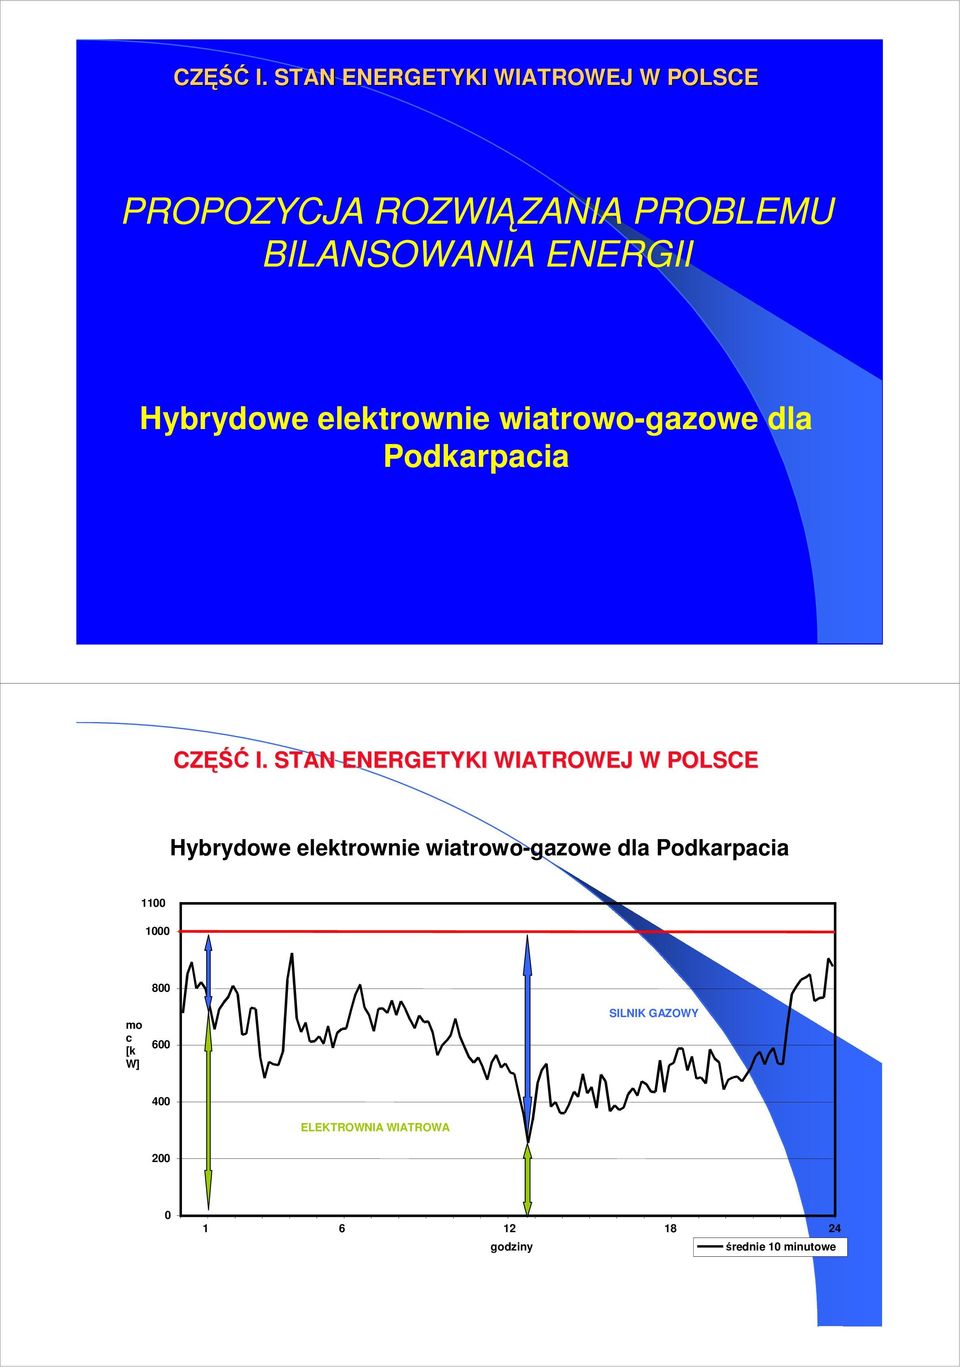 Hybrydowe elektrownie wiatrowo-gazowe dla Podkarpacia  STAN ENERGETYKI WIATROWEJ W POLSCE